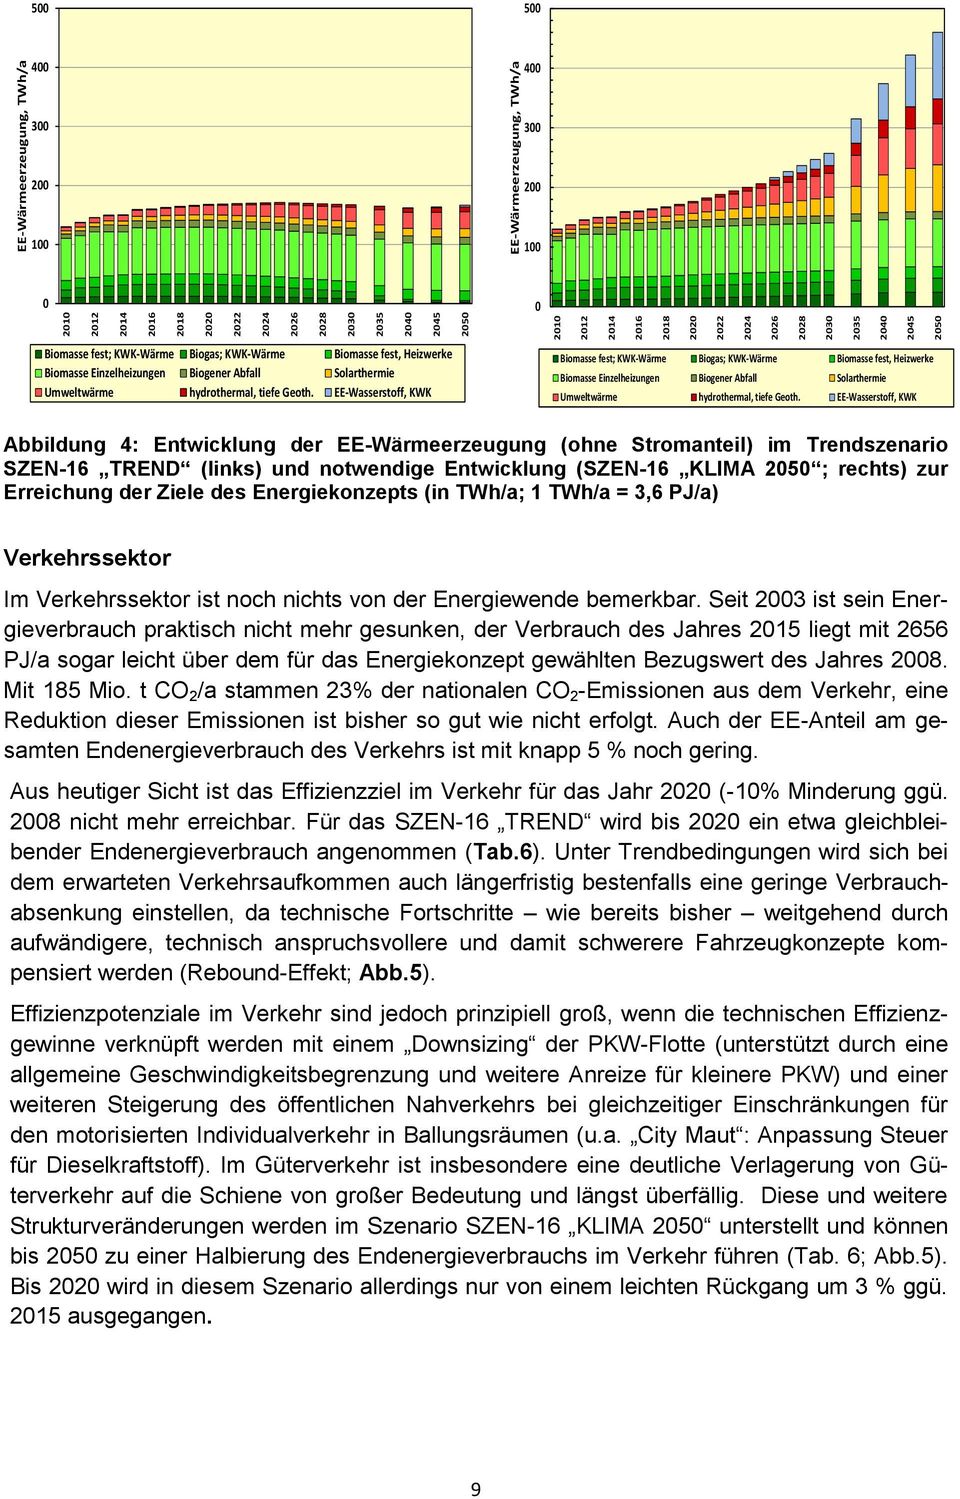 EE-Wasserstoff, KWK Biomasse fest;  EE-Wasserstoff, KWK Abbildung 4: Entwicklung der EE-Wärmeerzeugung (ohne Stromanteil) im Trendszenario SZEN-16 TREND (links) und notwendige Entwicklung (SZEN-16